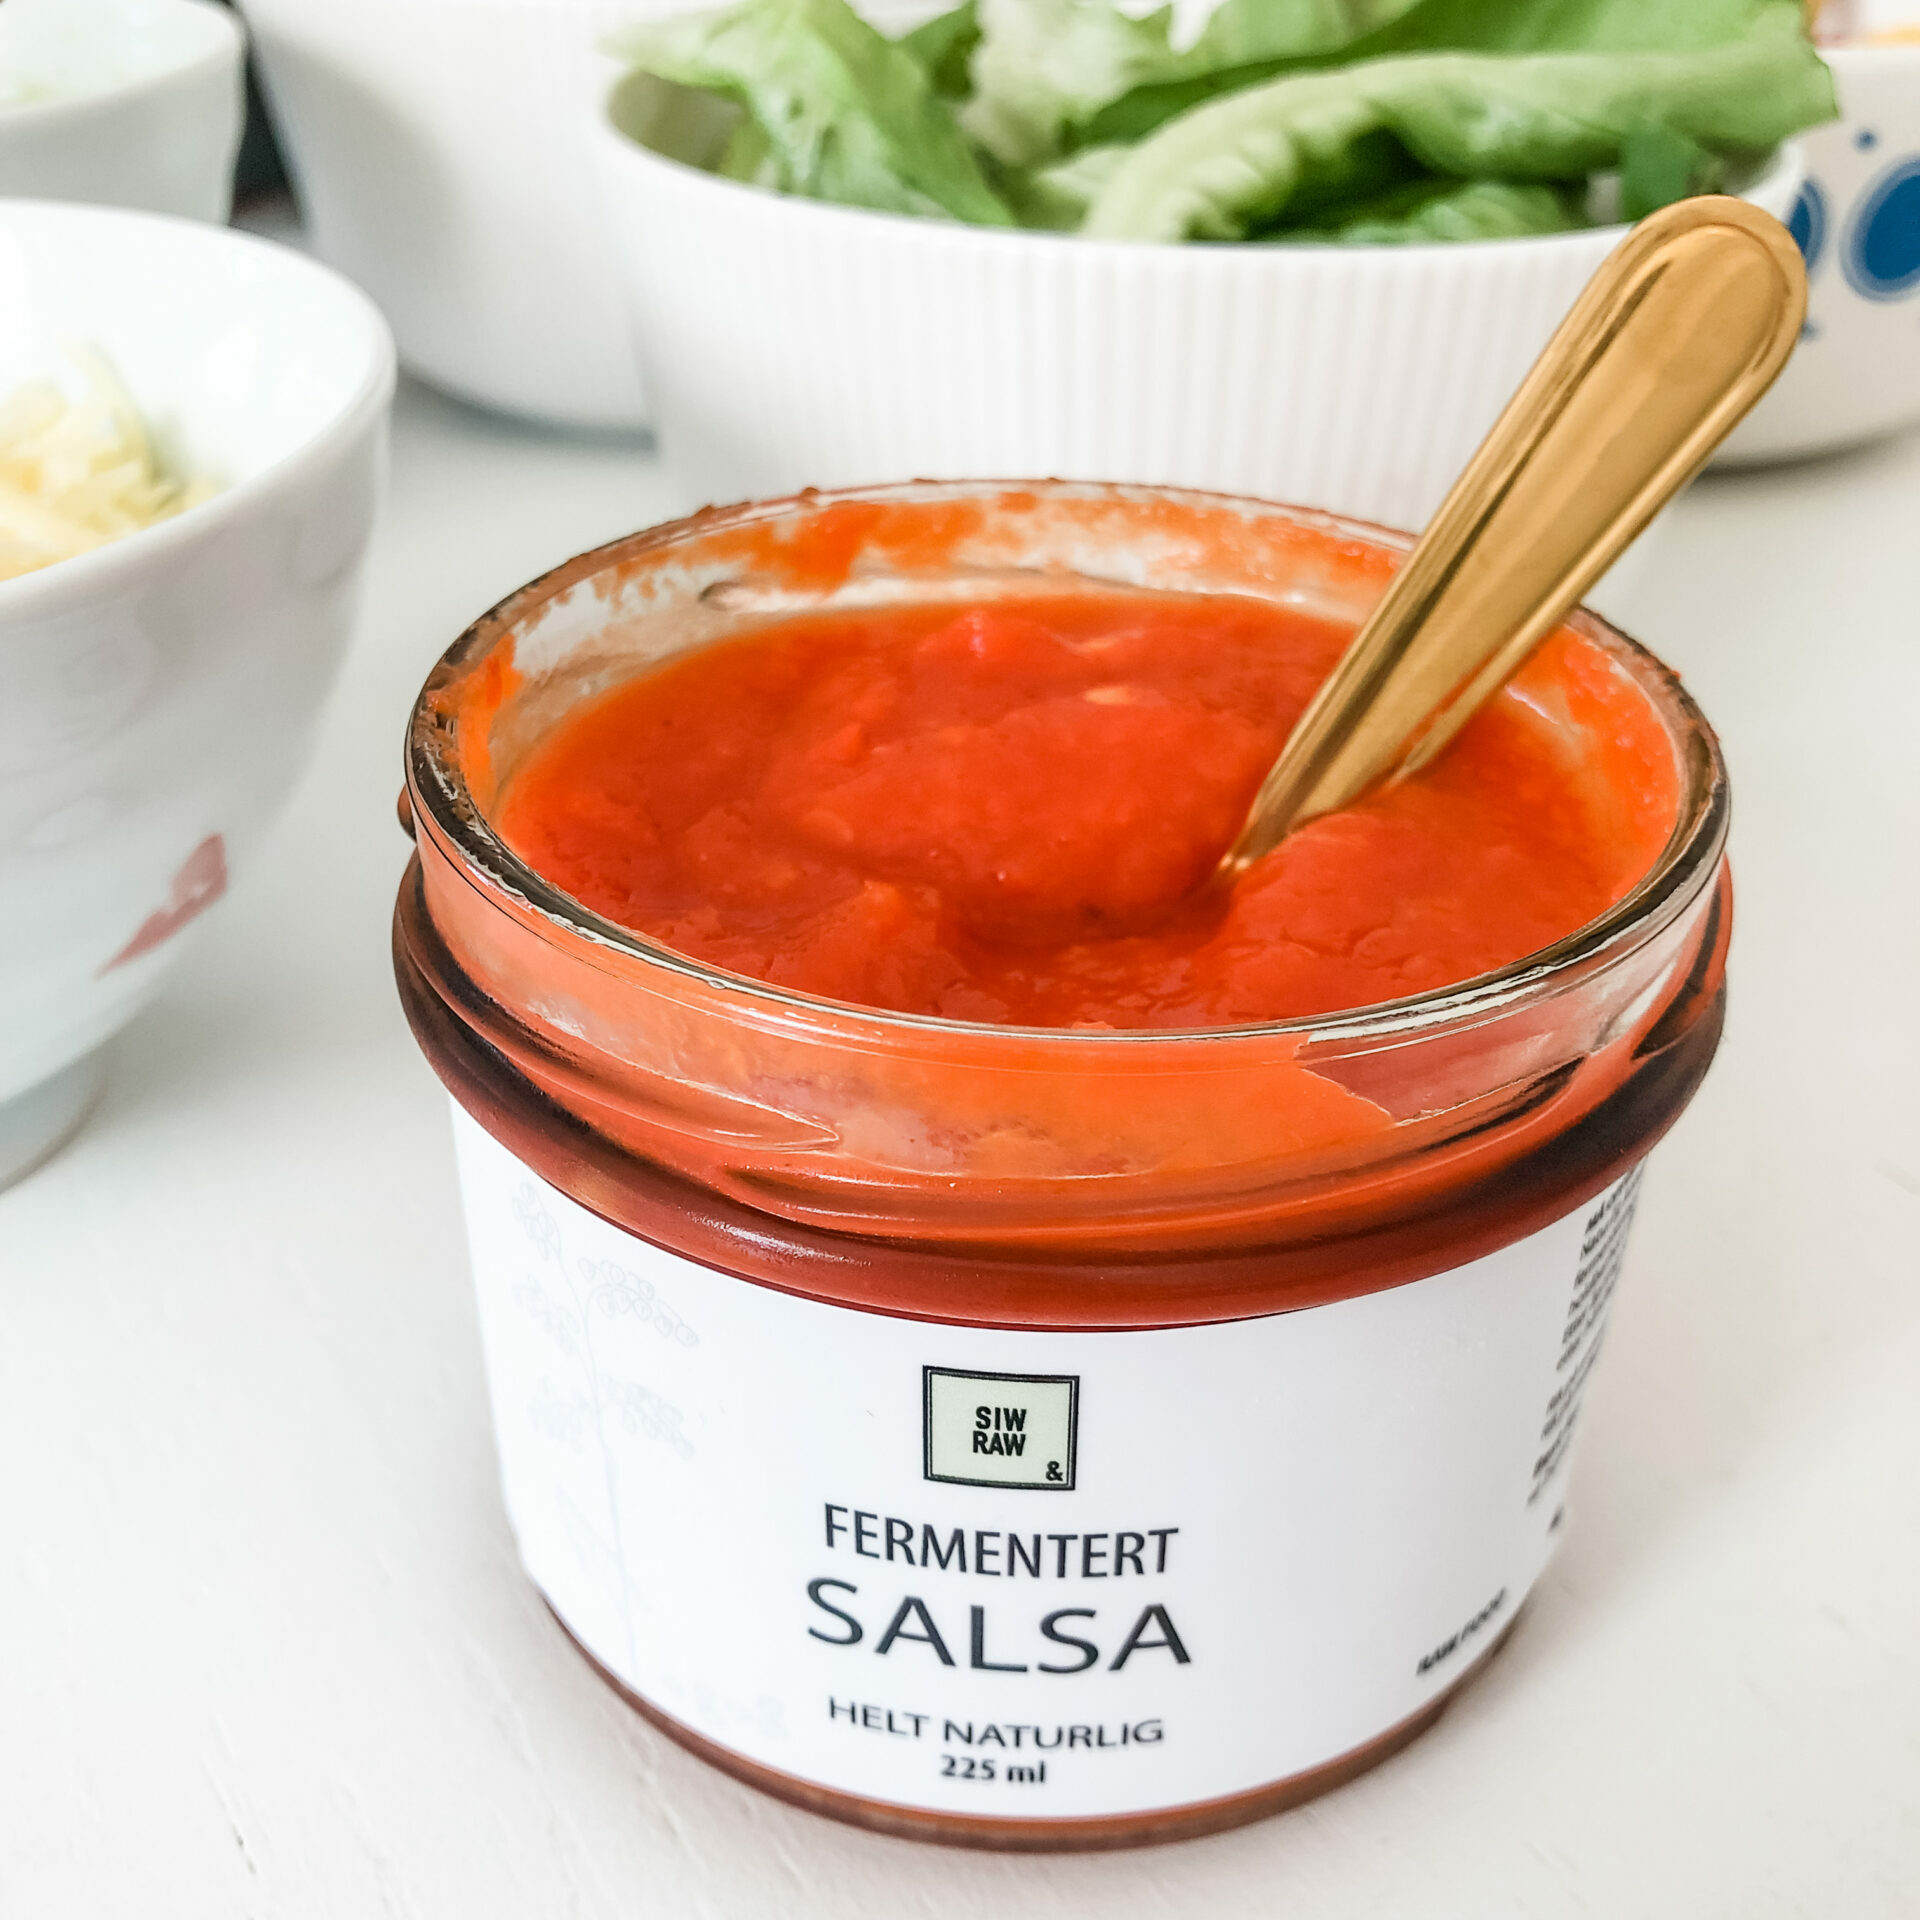 Fermentert salsa